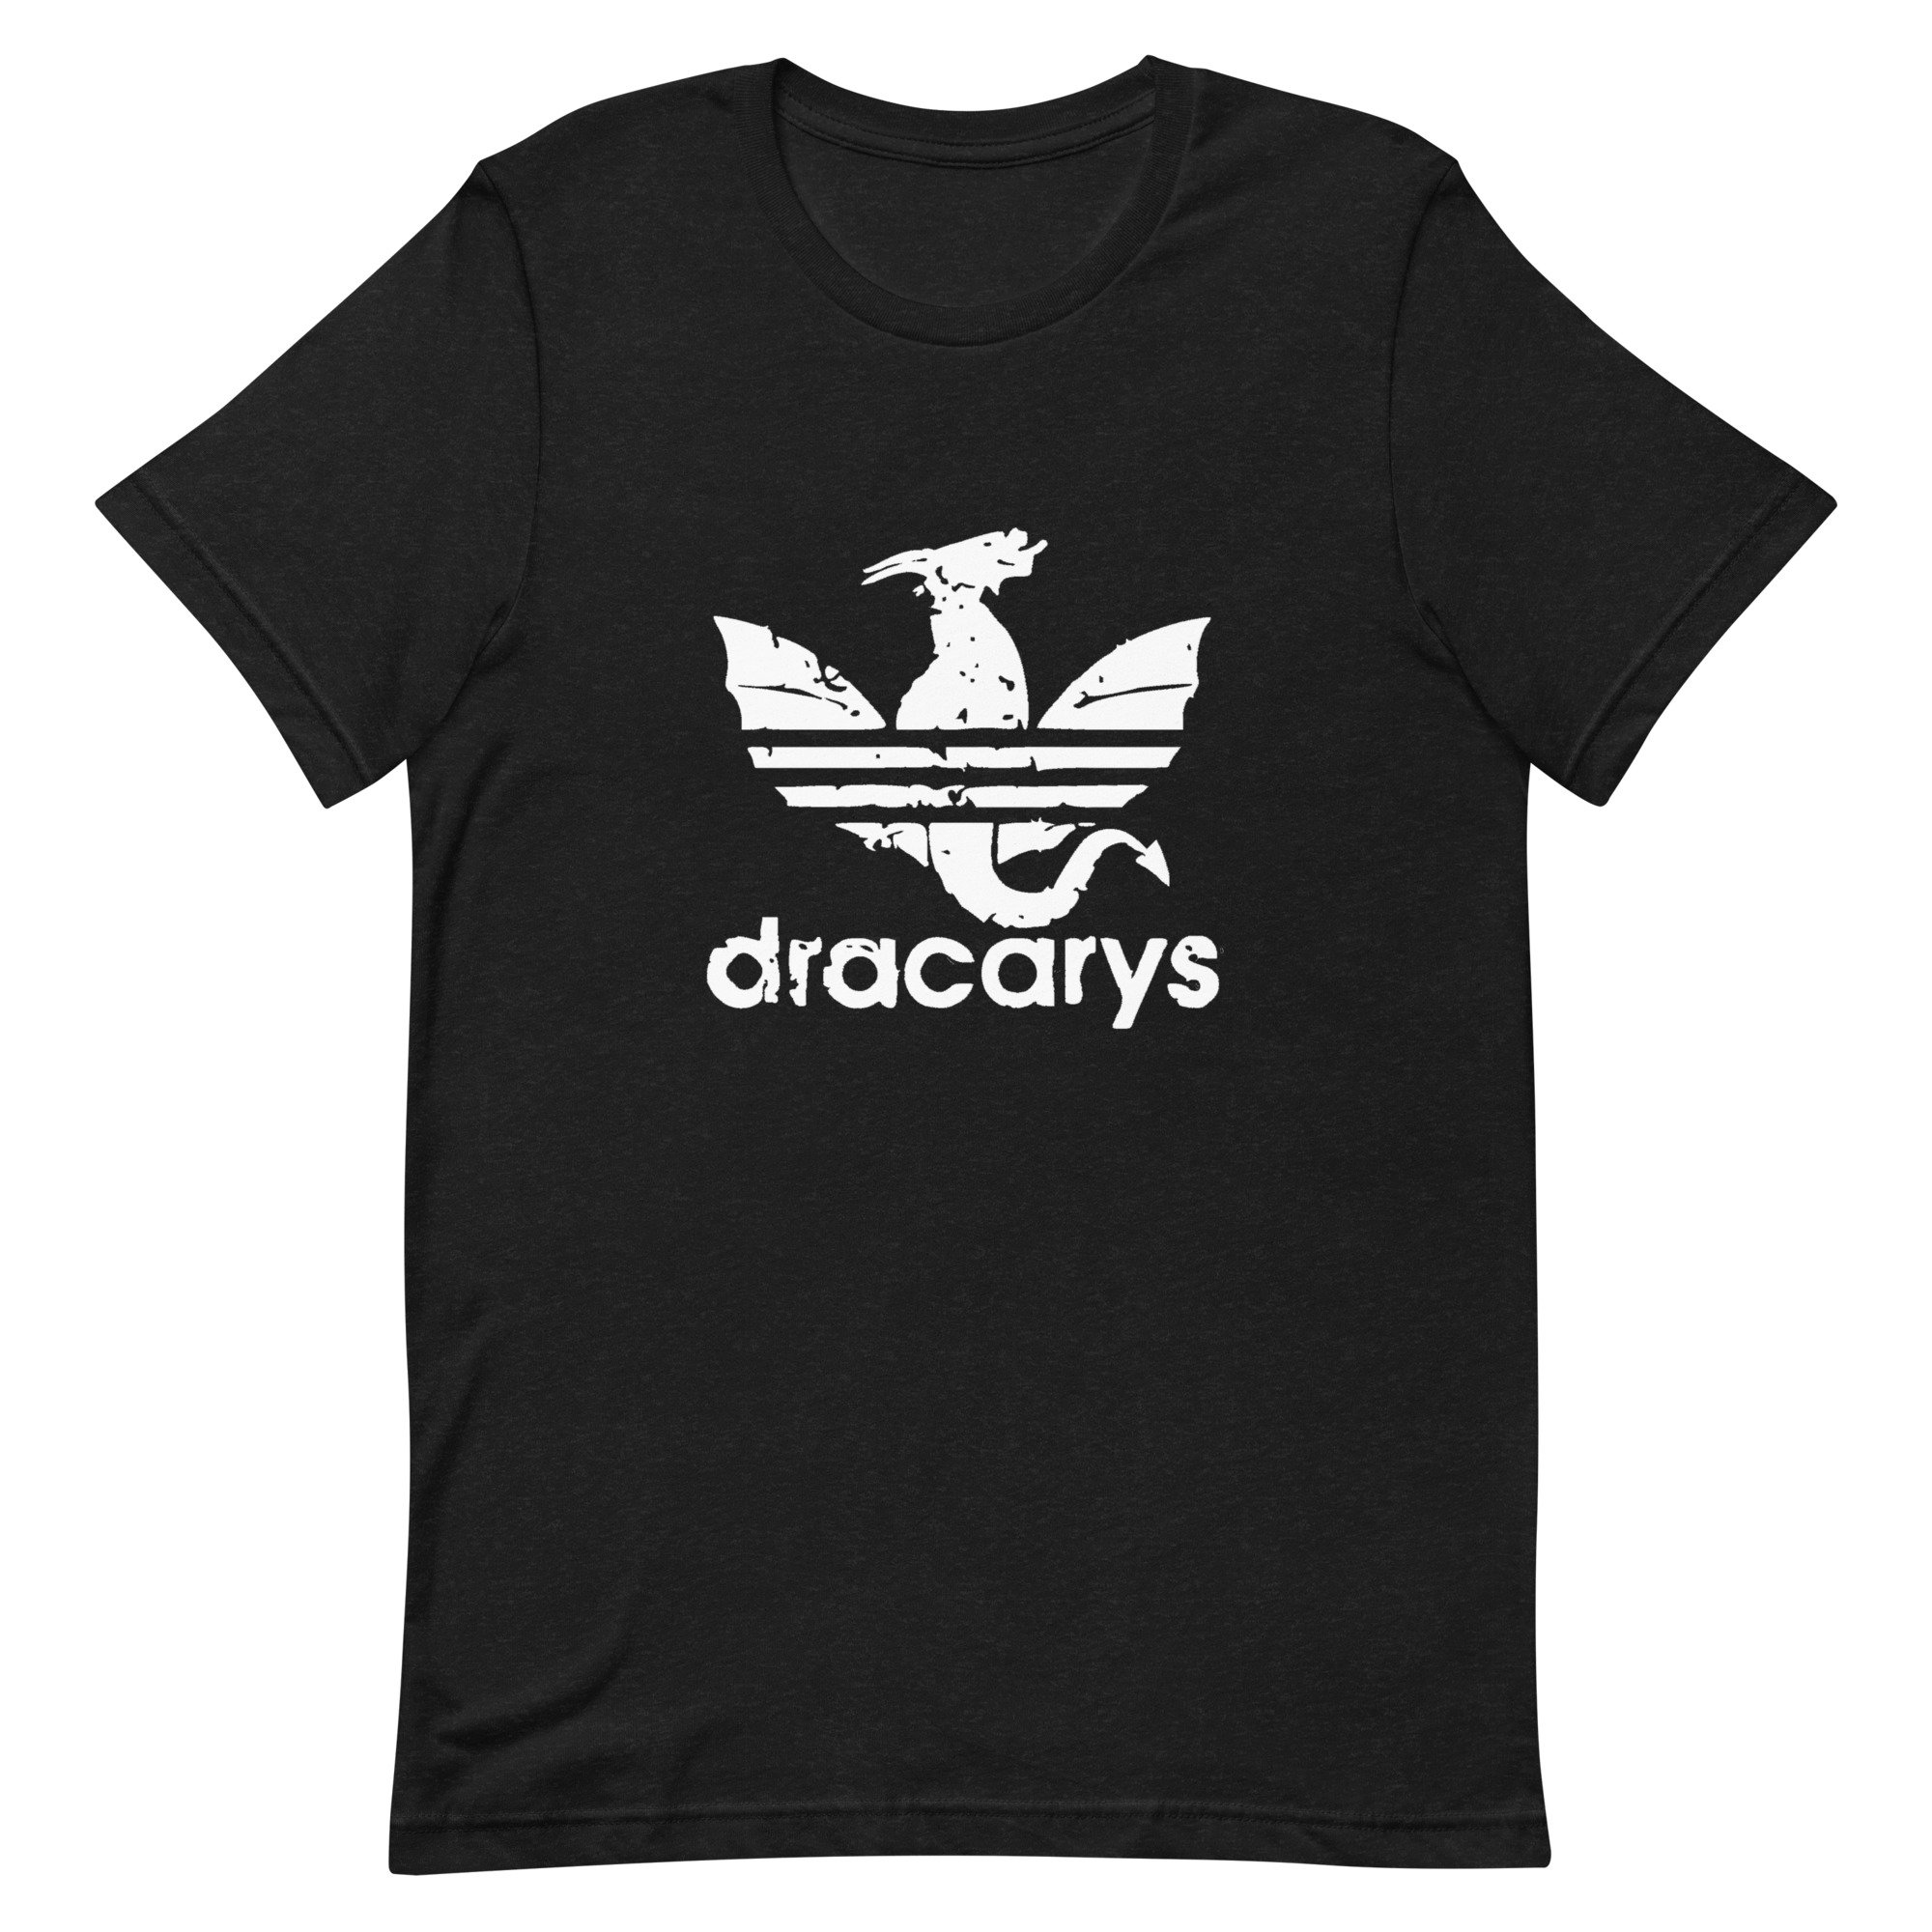 Dracarys - Etsy